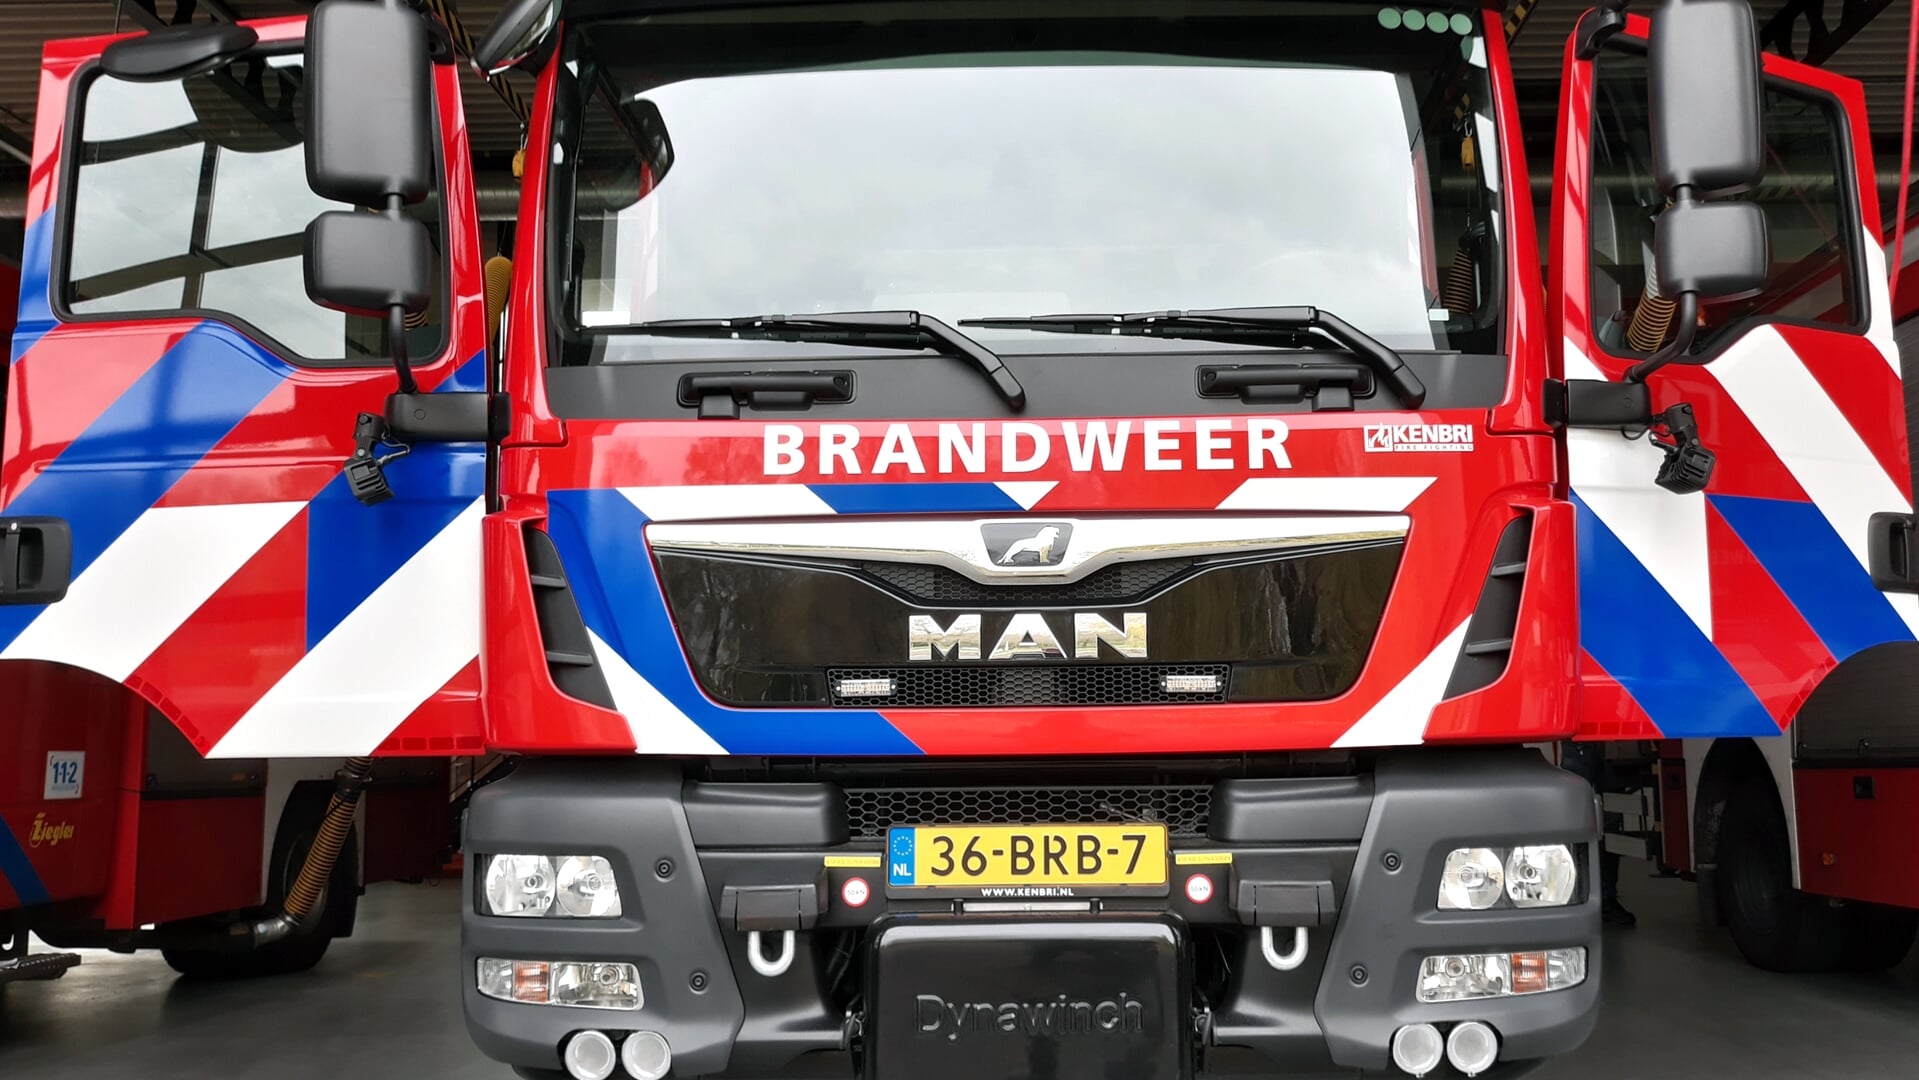 De nieuwe tankautospuit van Brandweer Kampen.